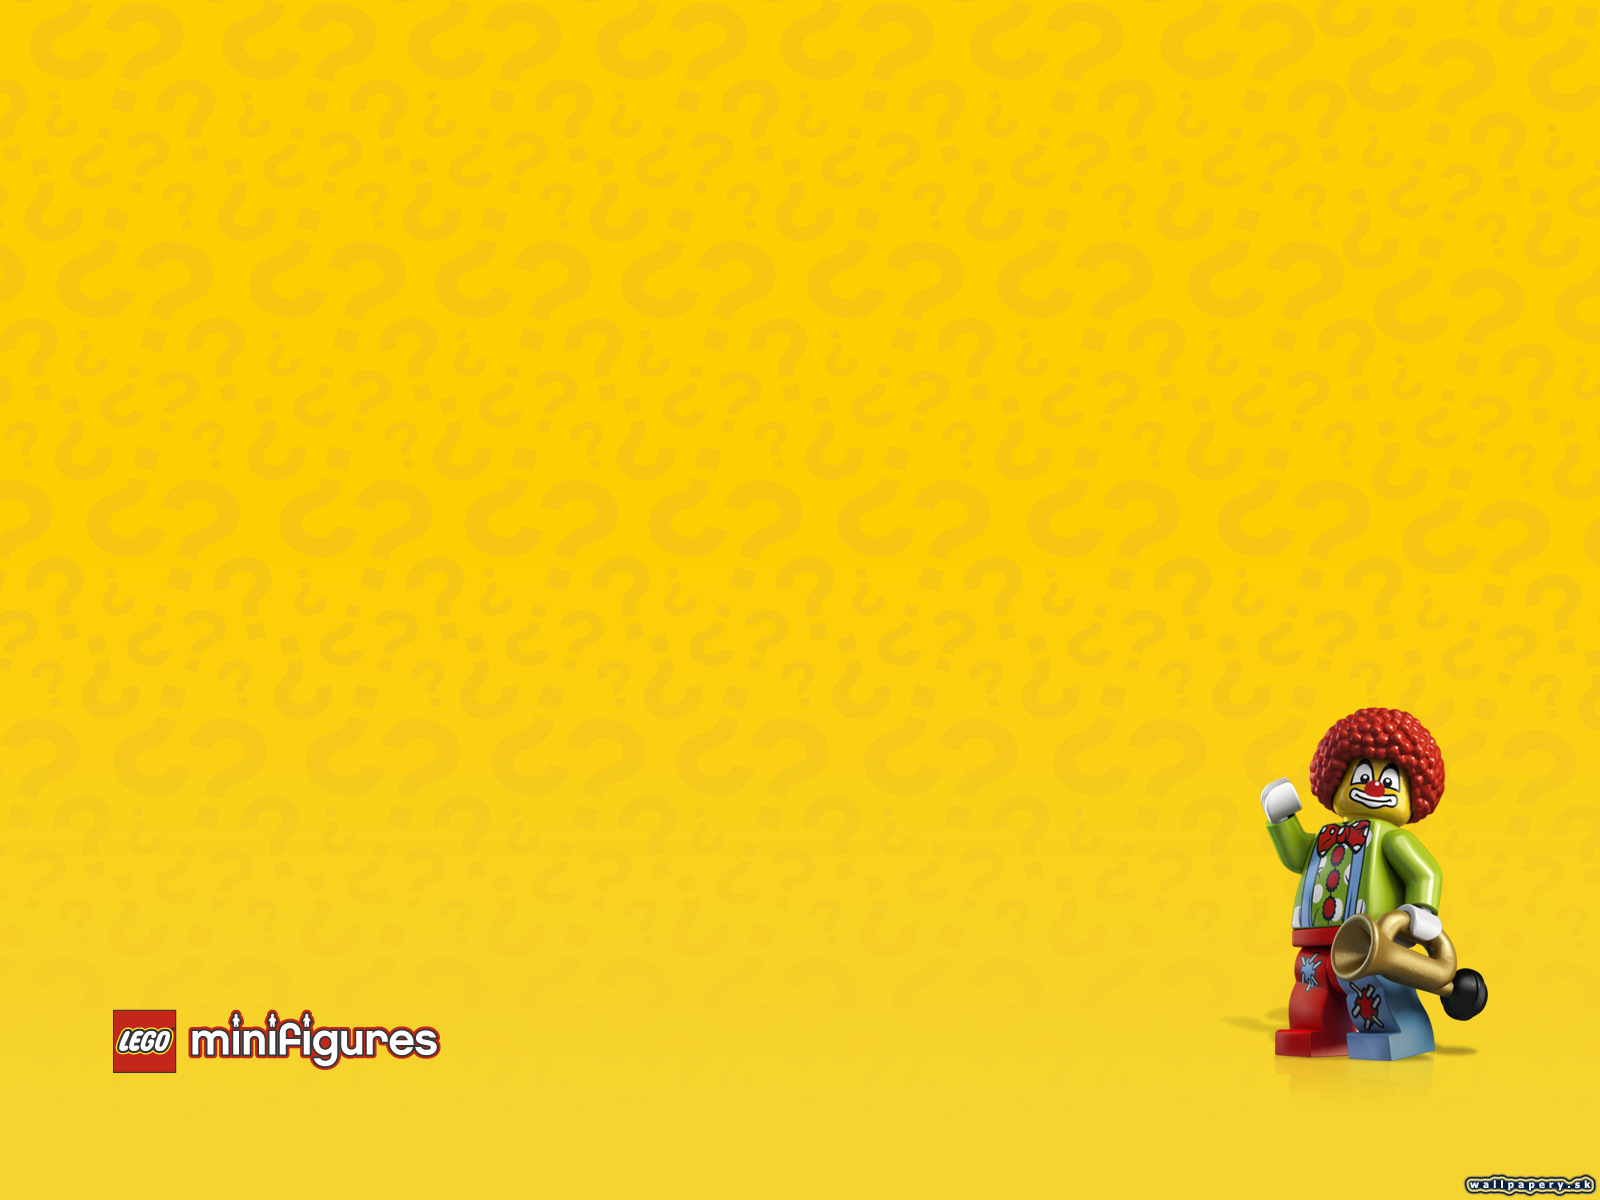 LEGO Minifigures Online - wallpaper 14